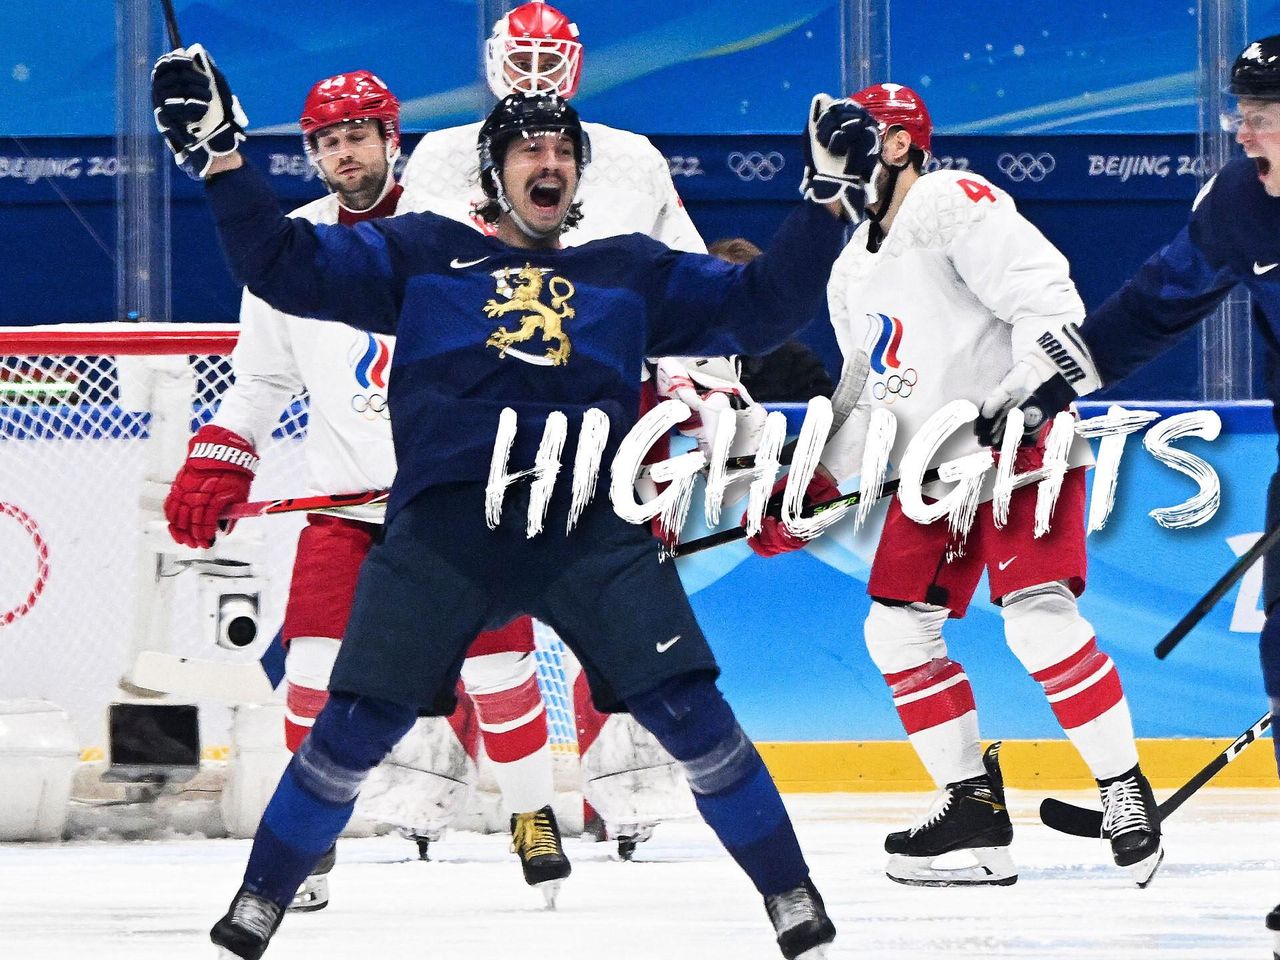 Olympia 2022 - Eishockey Finale der Männer um Gold zwischen Finnland und ROC - die Highlights - Eishockey Video